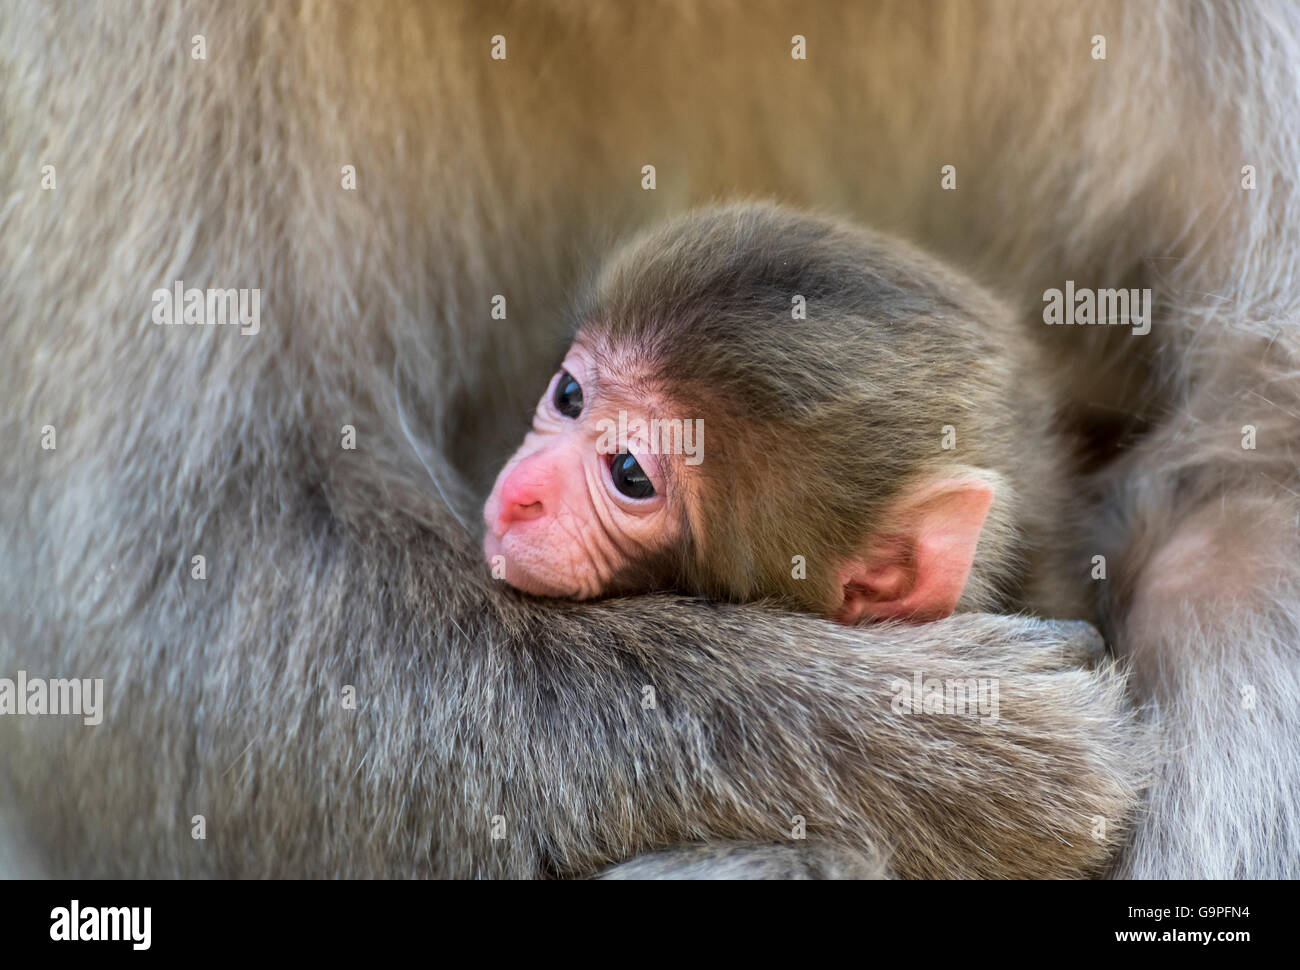 https://c8.alamy.com/compes/g9pfn4/bebe-de-macacos-japoneses-macaca-fuscata-en-el-parque-de-monos-de-nieve-en-jigokudani-yamanouchi-japon-g9pfn4.jpg